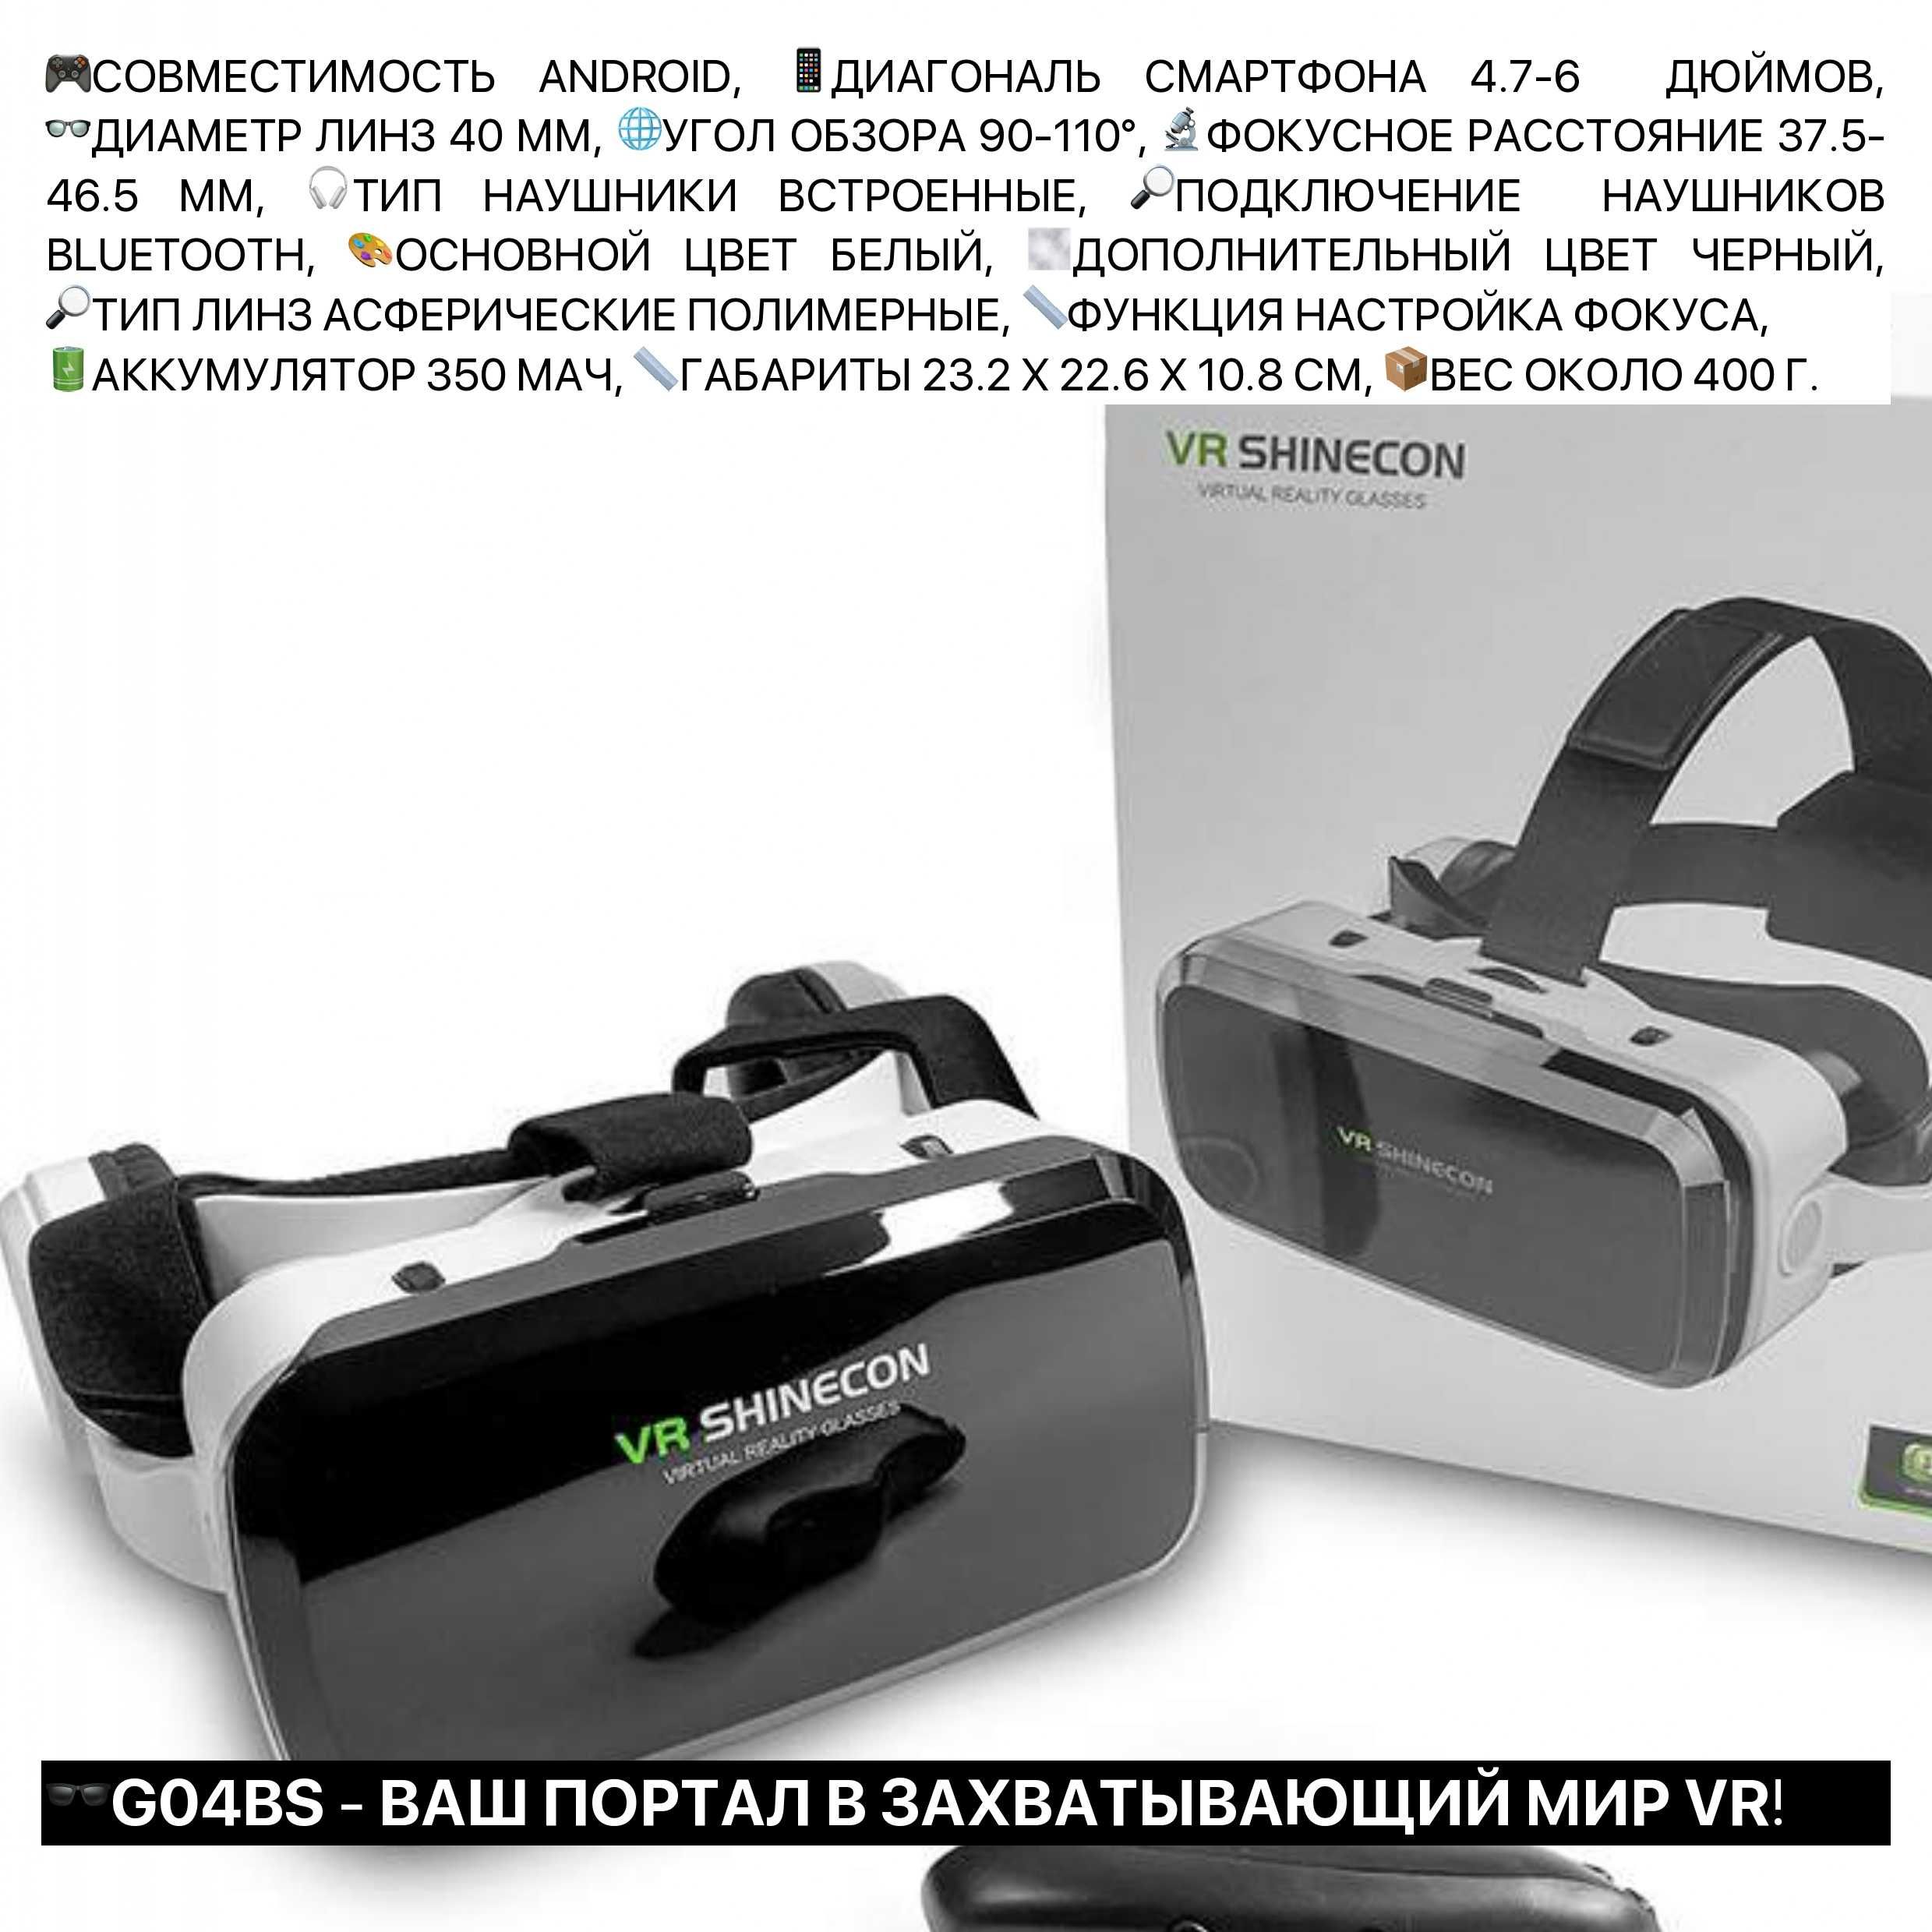 VR BOX SHINECON очки виртуальной реальности для телефона с джойстиком